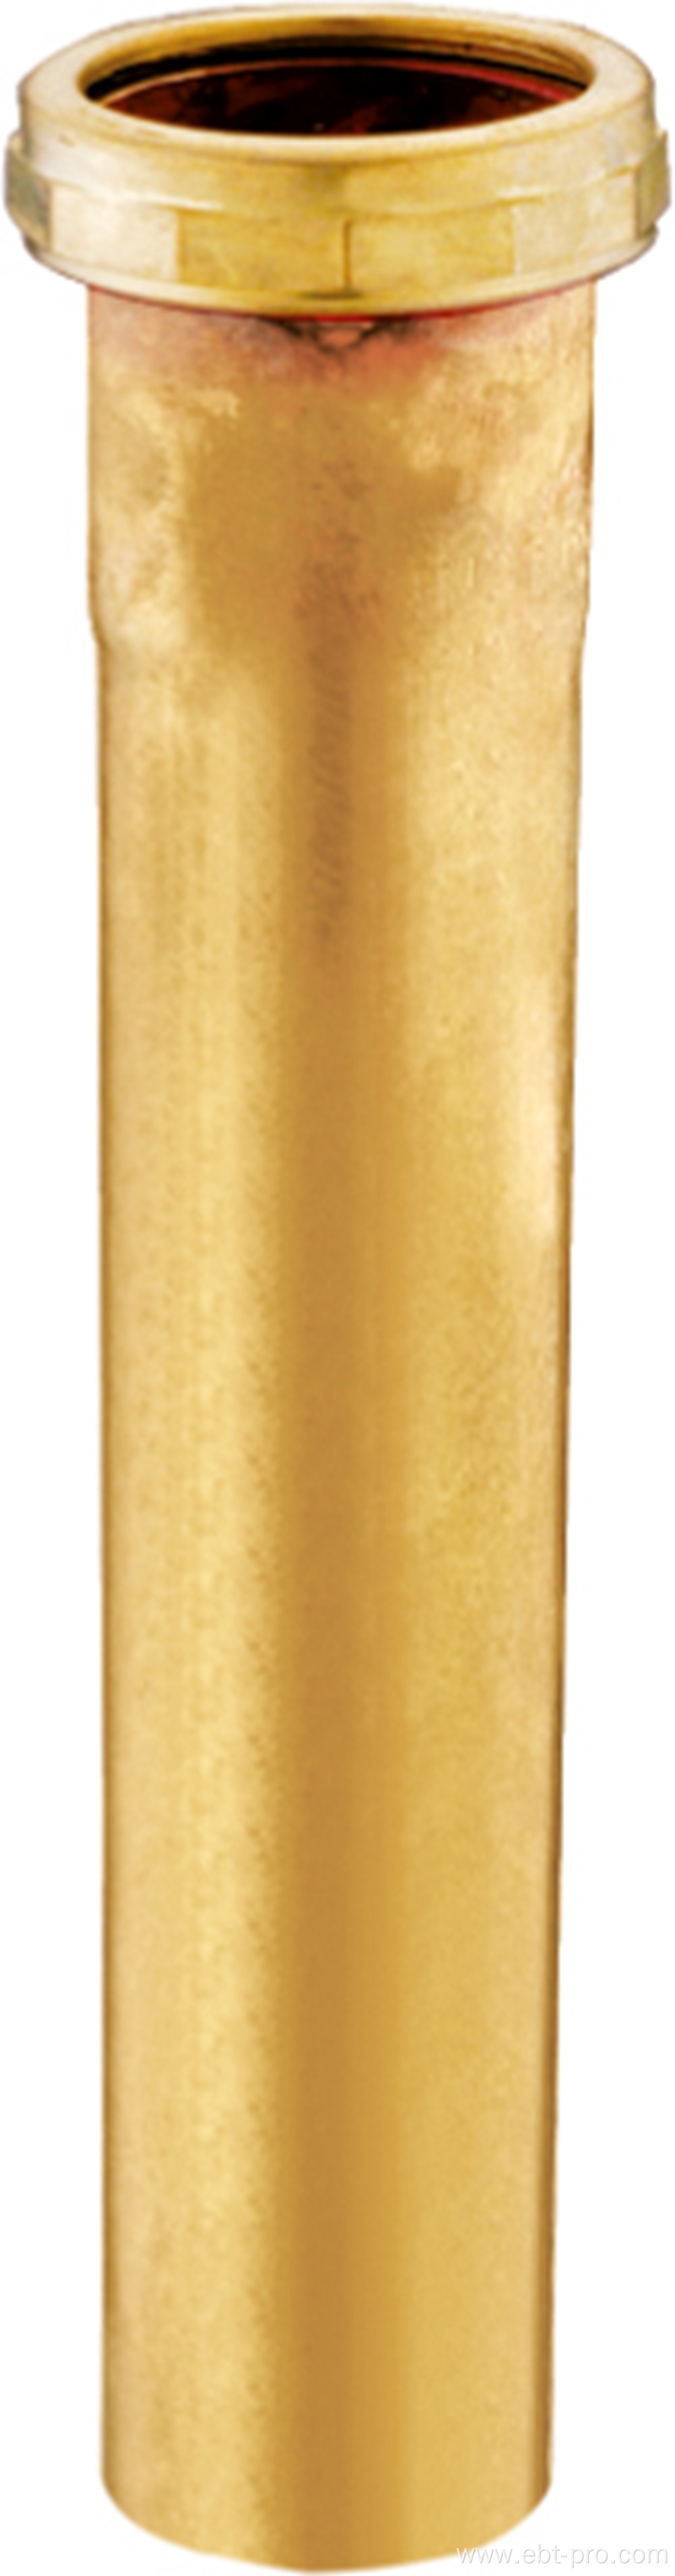 Brass Slip Joint Extension Tube